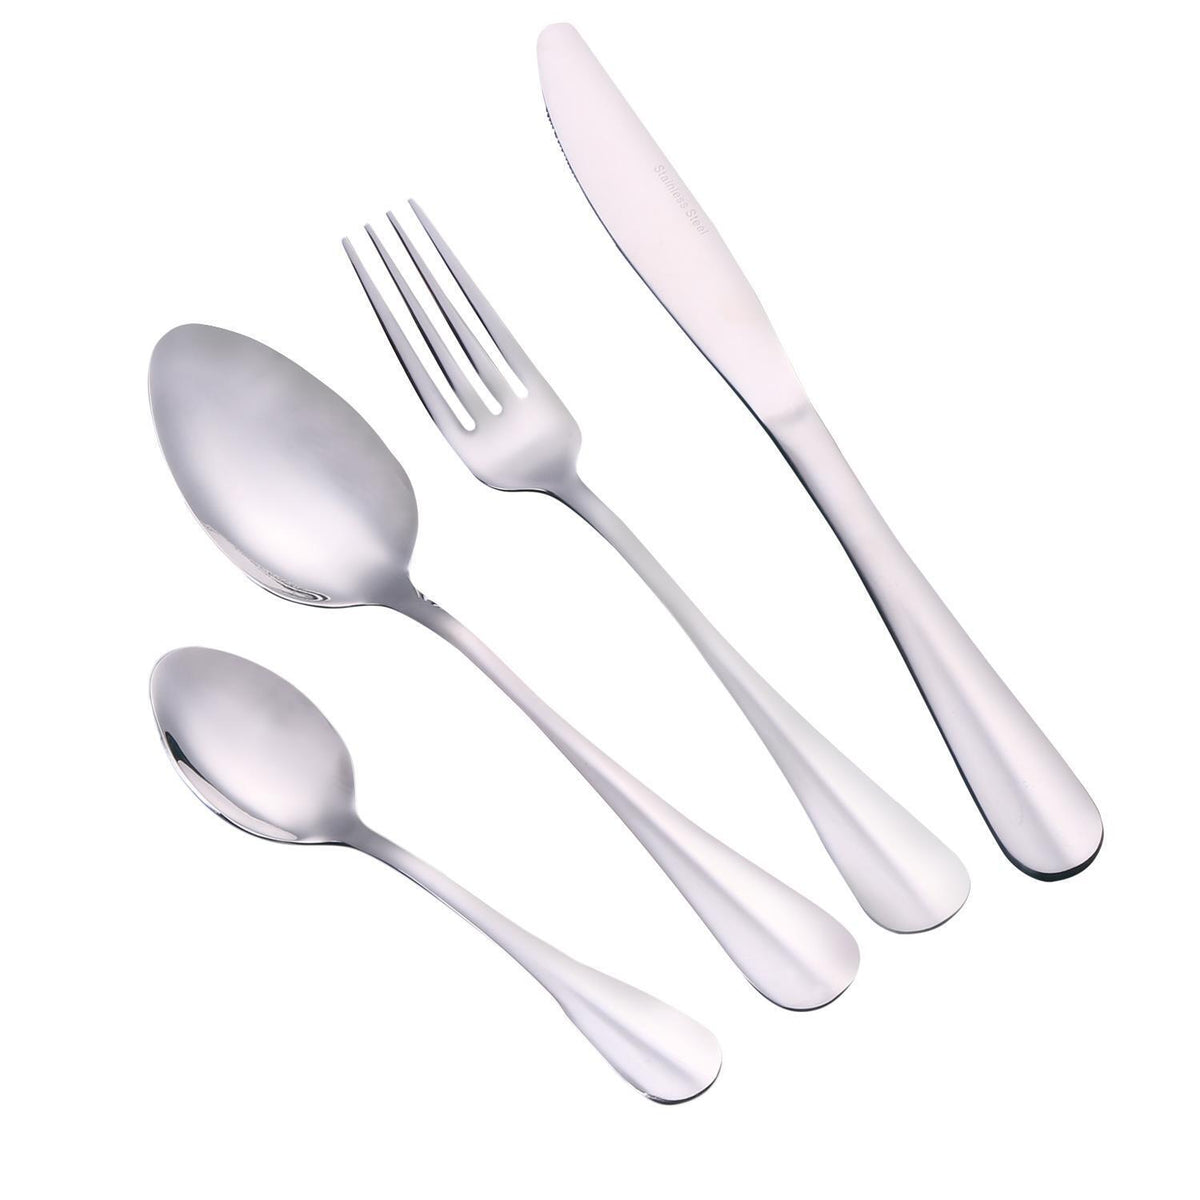 Stainless Steel 16-Piece Cutlery Set Tableware